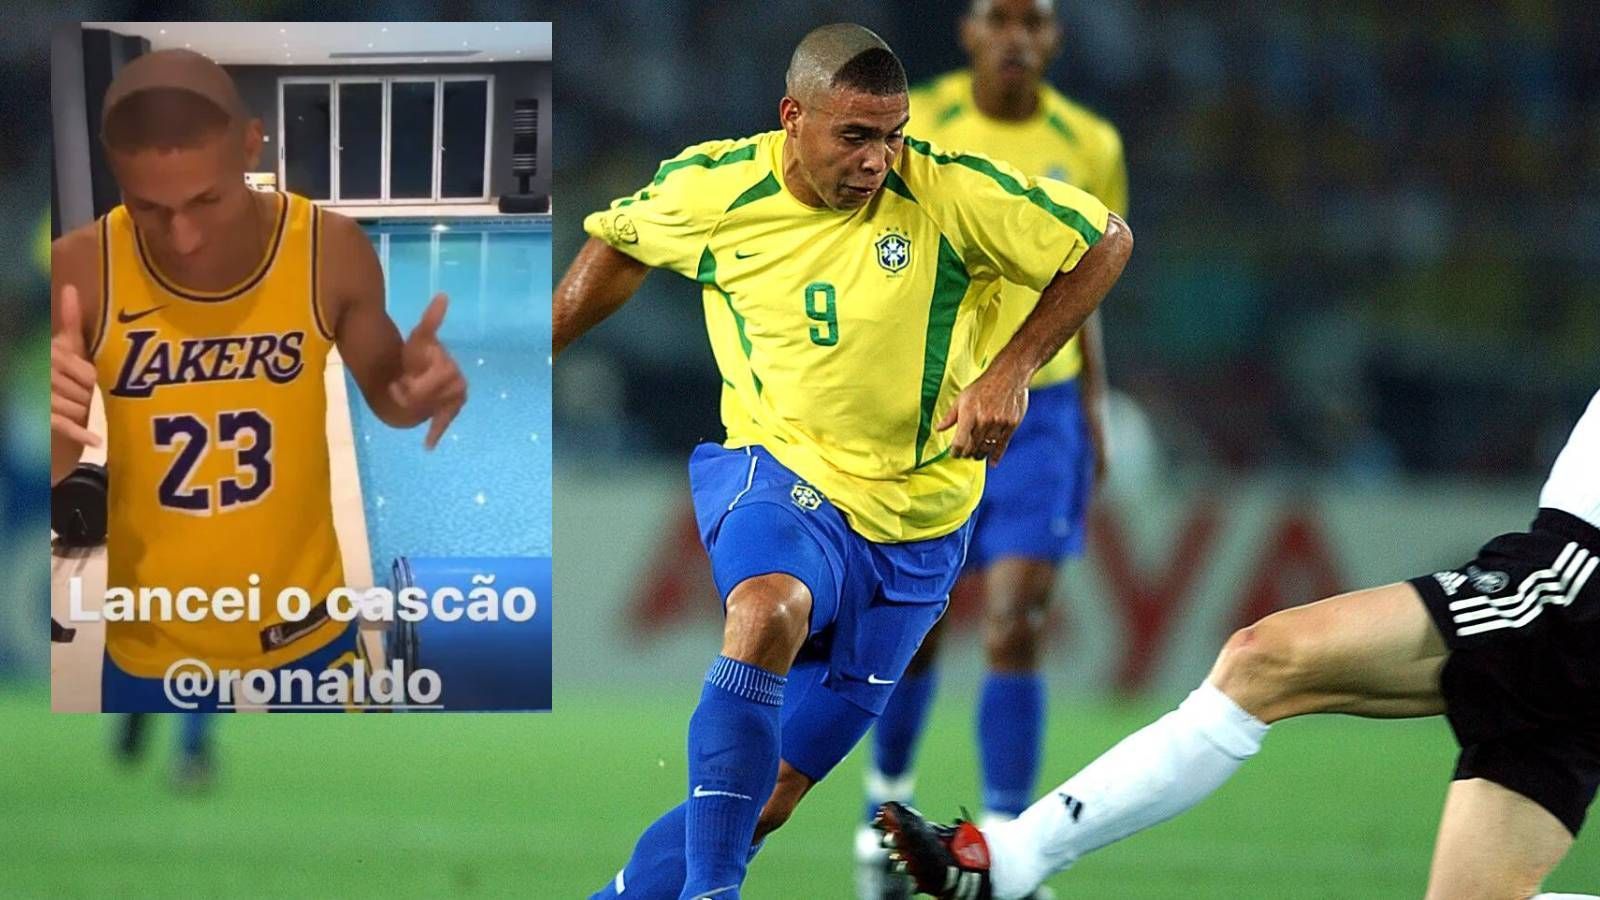 
                <strong>Richarlison</strong><br>
                ... und daher hat er die Ronaldo-Friese von 2002 sogar schon öfter und mit Stolz getragen, wie dieses Bild aus dem Jahr 2020 zeigt. "Ronaldo ist jemand, der mich seit meiner Kindheit inspiriert hat", sagte Richarlison schon vor einiger Zeit bei "TV Globo" über seine Verehrung für "El Fenomeno", "der Moment, der mich wirklich geprägt hat, war das zweite Tor im Finale 2002". Damals war Richarlison gerade einmal fünf Jahre alt.
              